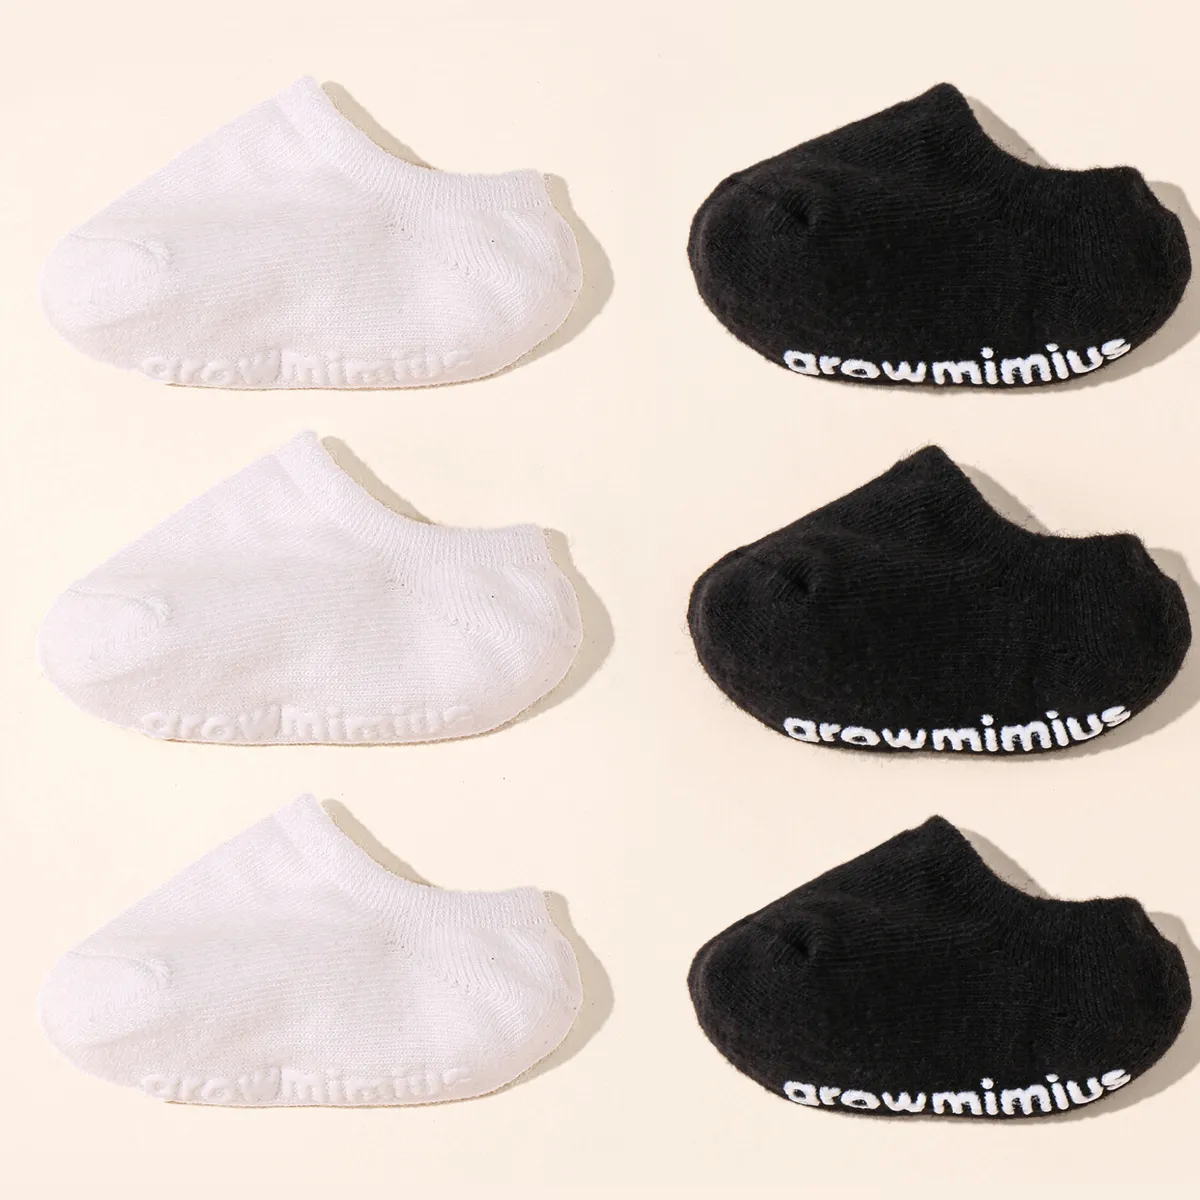 6 Paar rutschfeste Babysocken in reiner Farbe schwarz/weiß big image 1